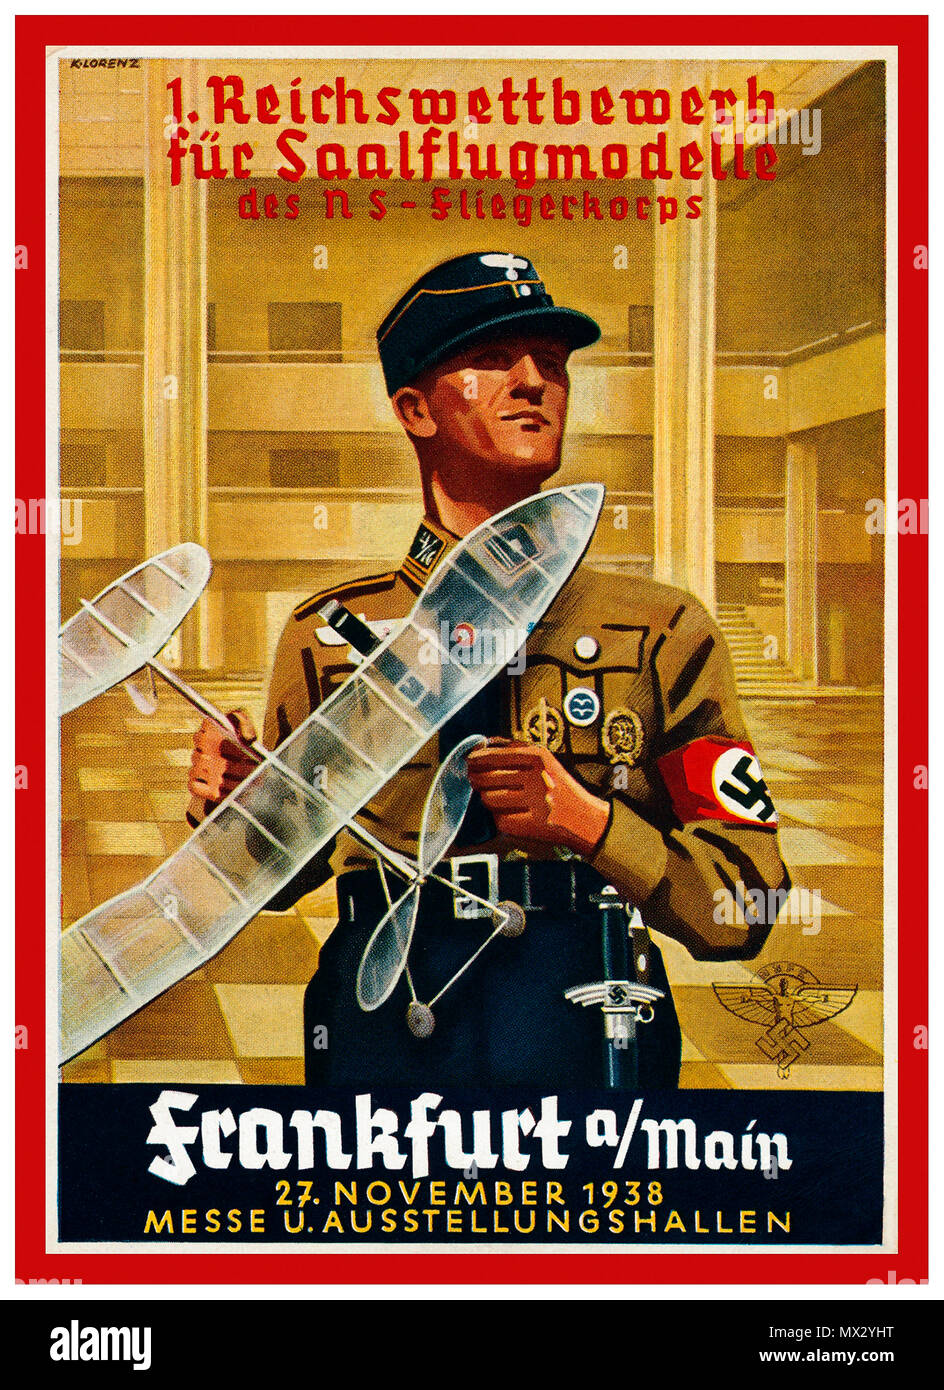 1938-nationalsozialistischen Deutschland Propaganda Postkarte mit einem Modell Flugzeuge Wettbewerb in einer Zeit, in der die WWI Nichtüberstellungsabkommen limited deutsche Luftfahrt und Raumfahrt Bildung auf andere Weise gefördert wurde... Stockfoto